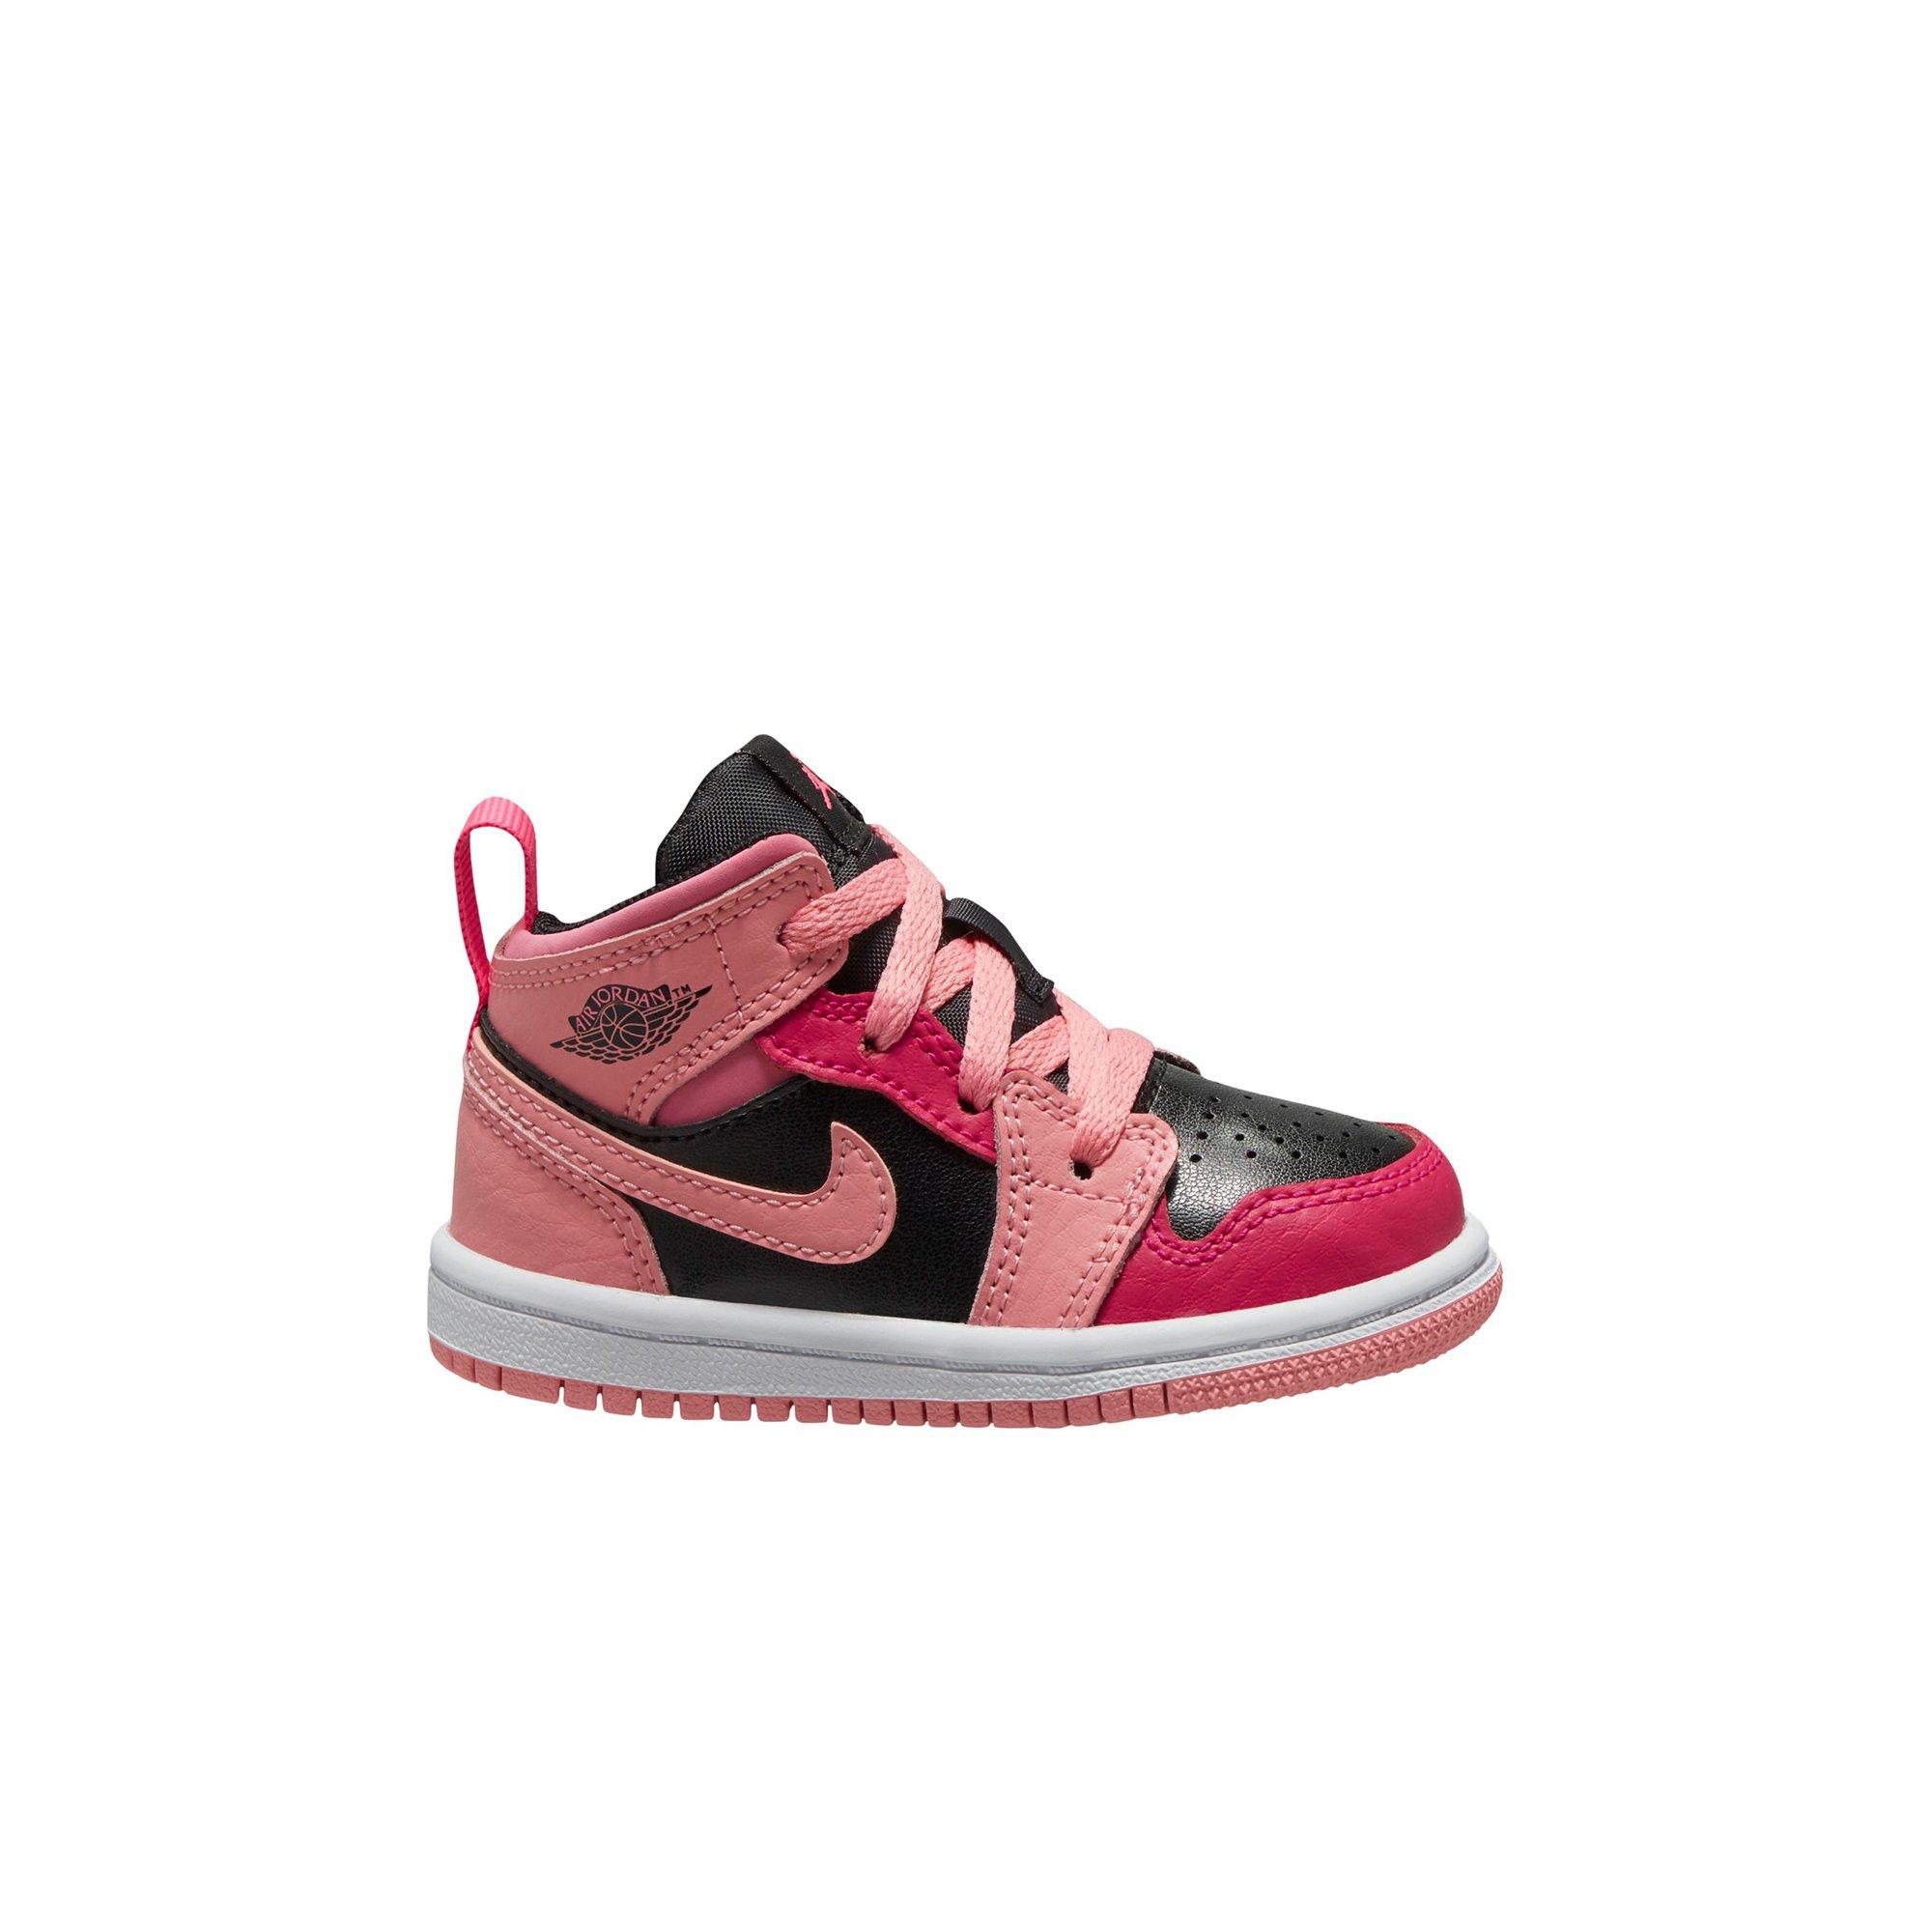 Jordan 1 Mid "Coral Pink/Black" Toddler Girls' Shoe - Hibbett Gear